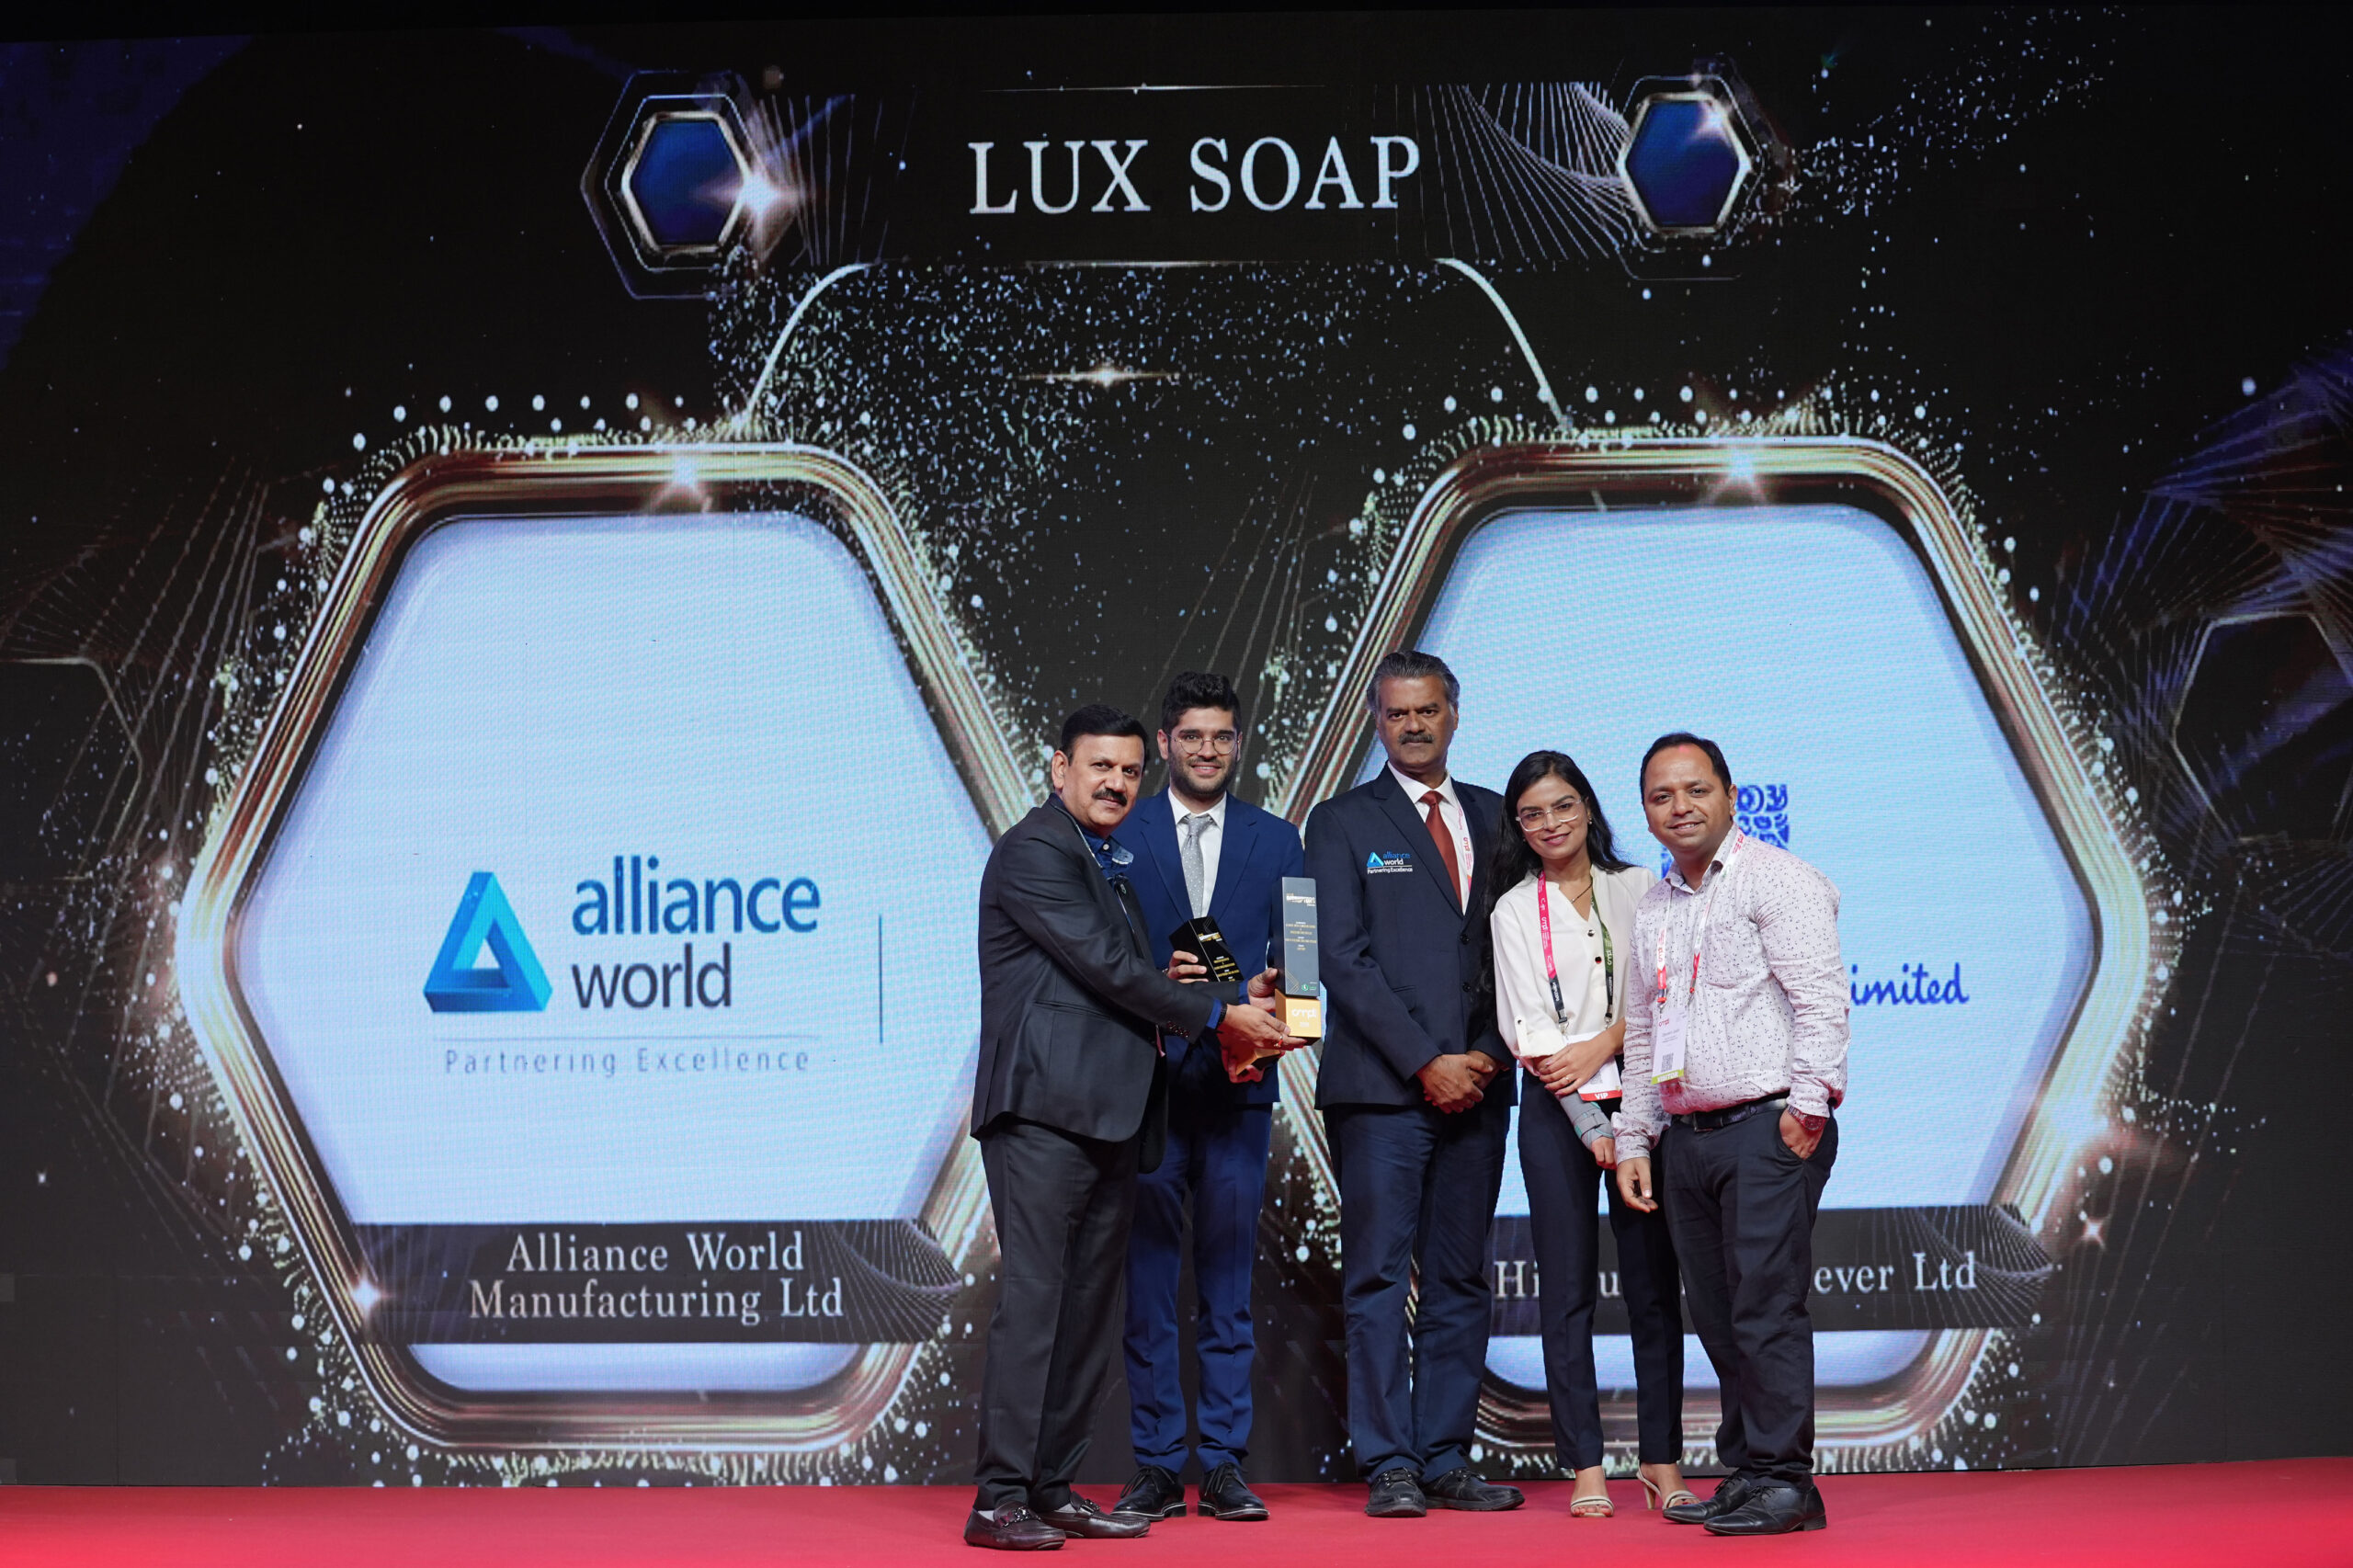 Alliance-World-and-Hindustan-Unilever-Ltd